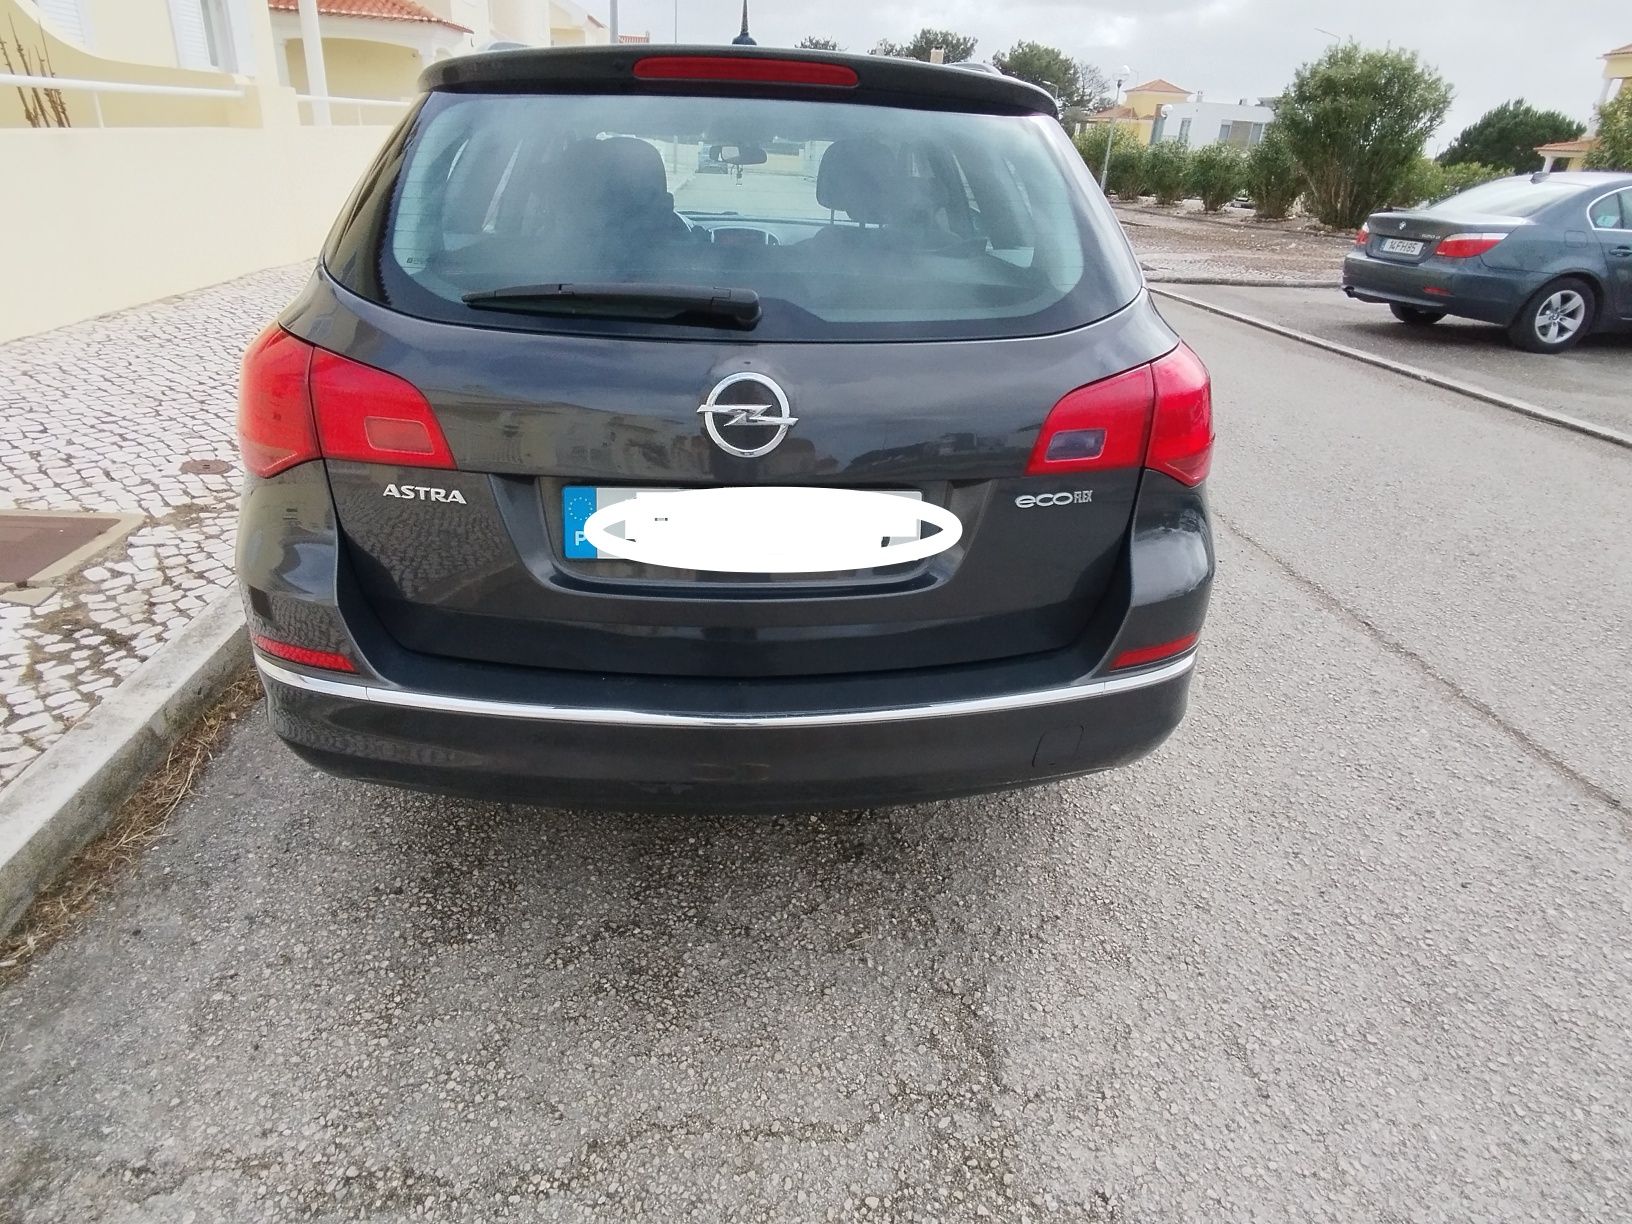 Opel Astra 1.3 CDTI (95CV)